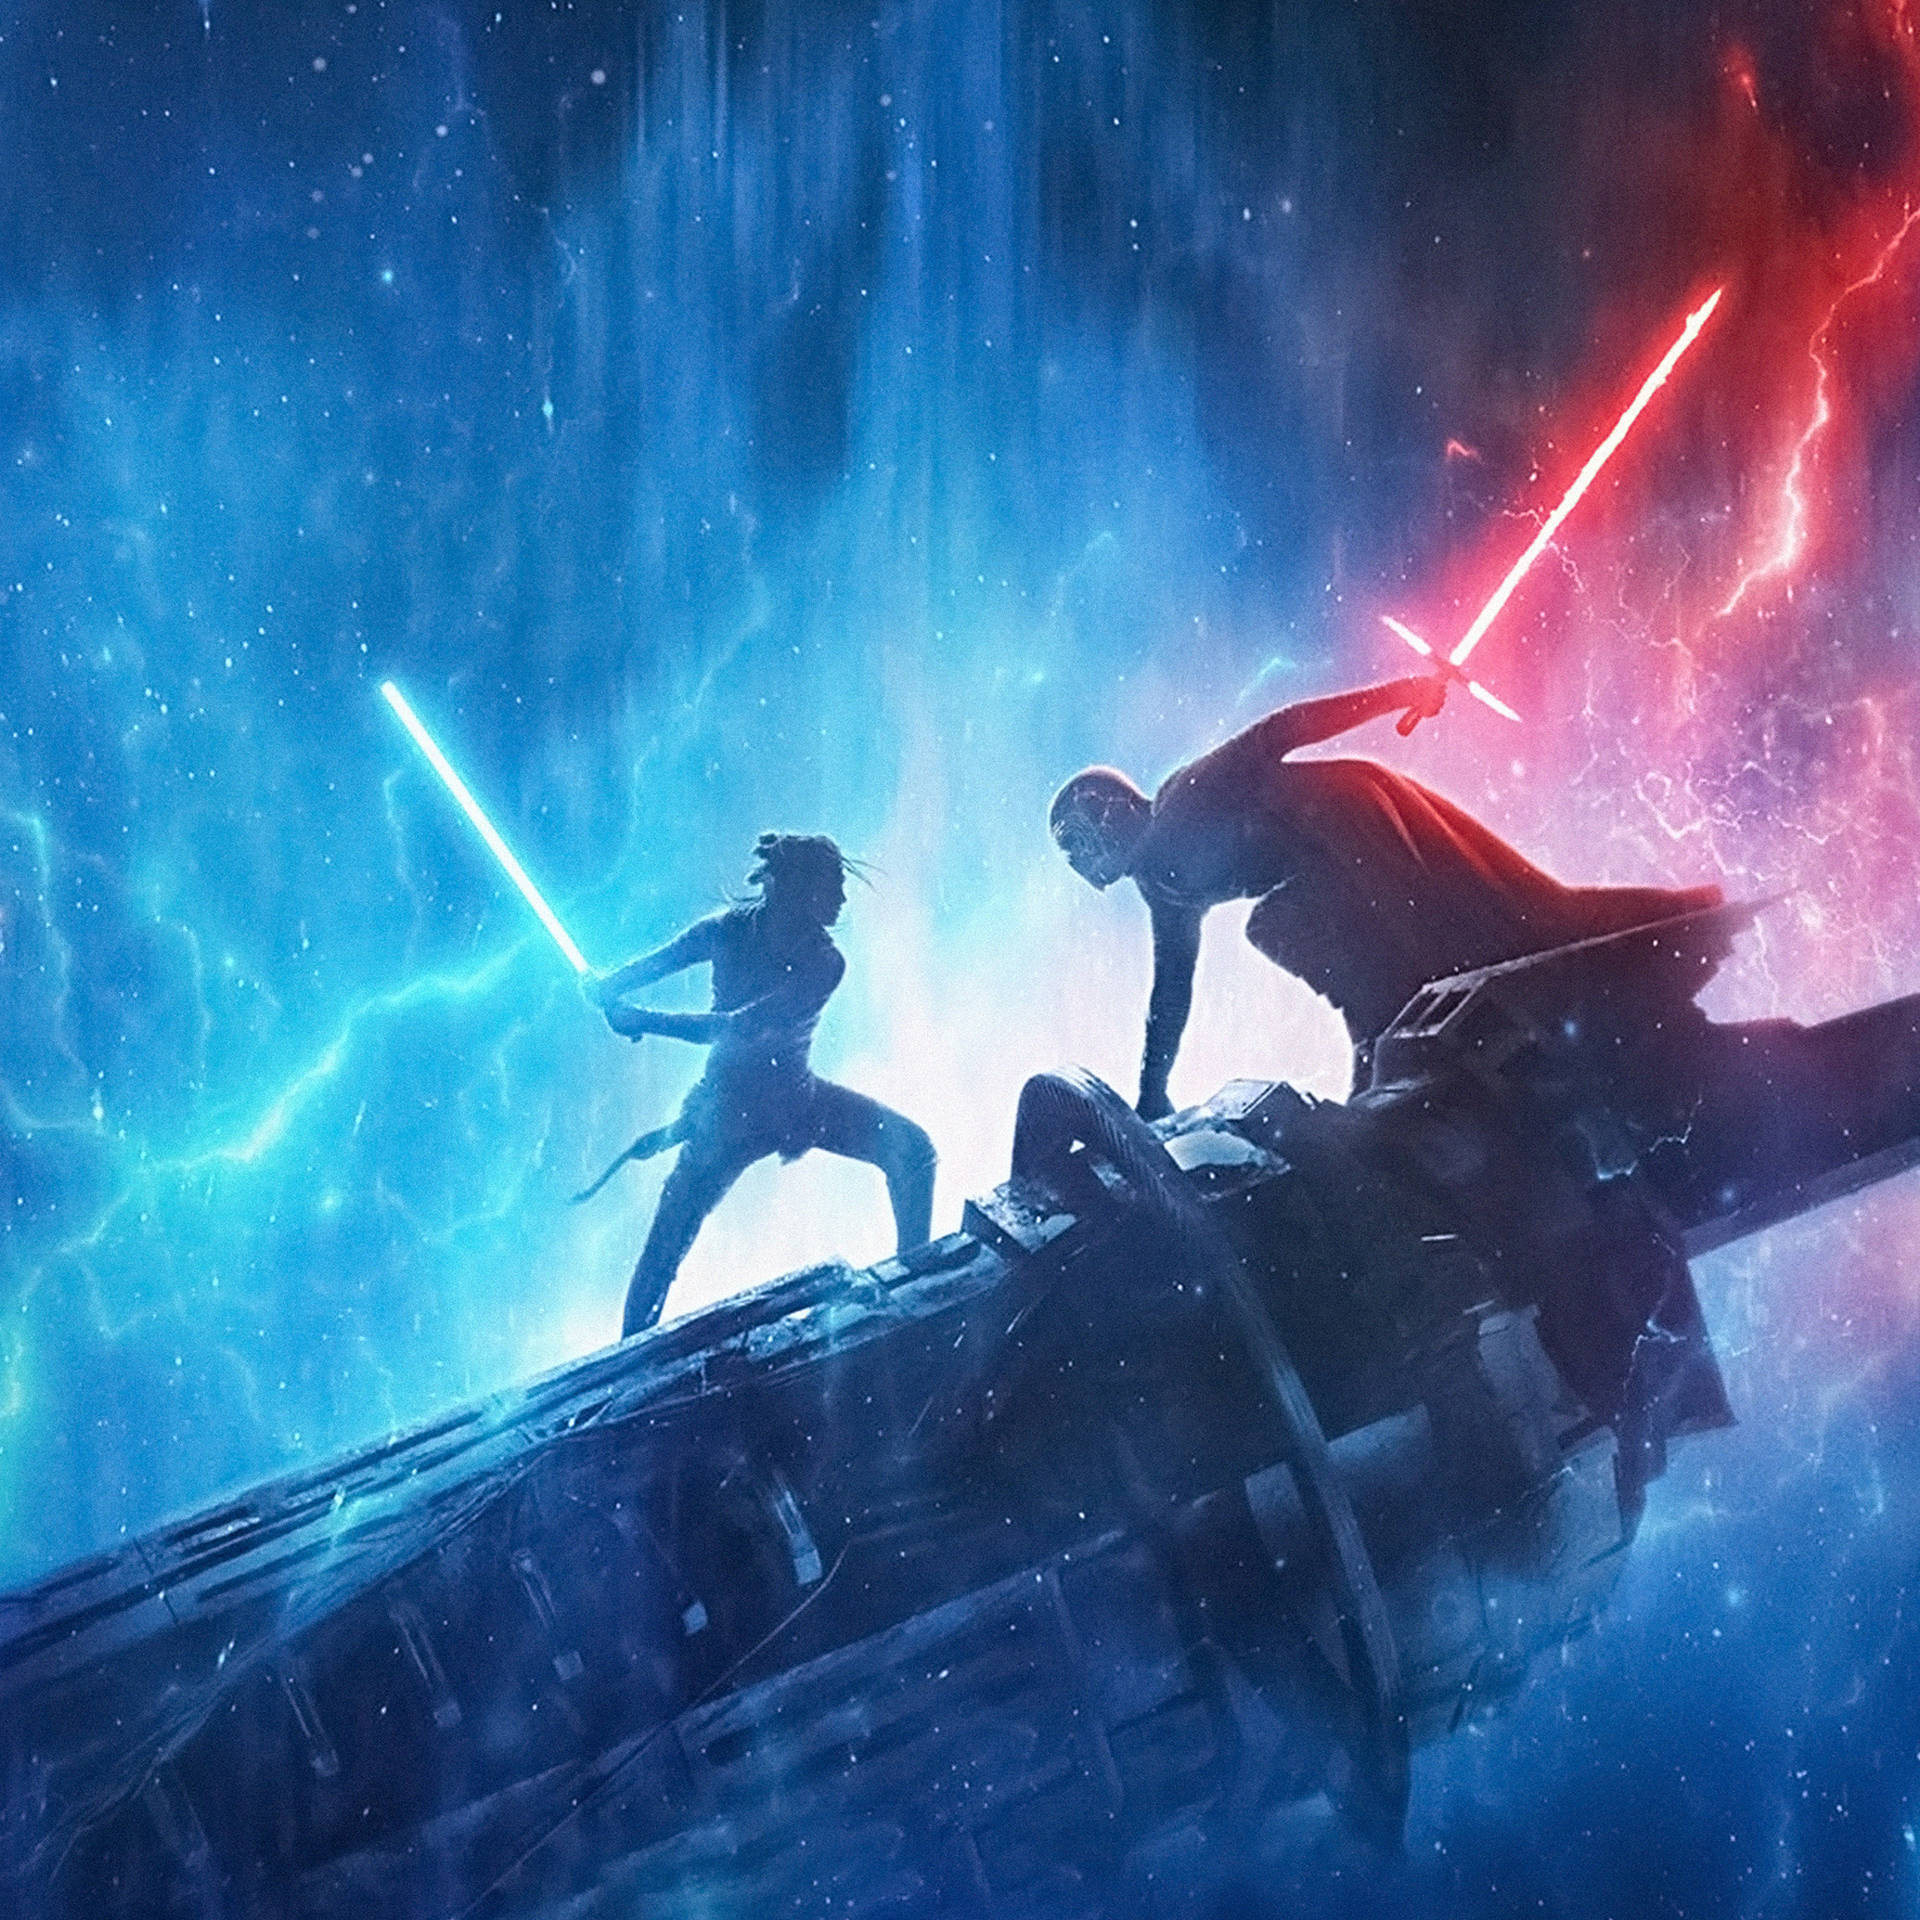 Star Wars Ipad Rey And Kylo Ren Background